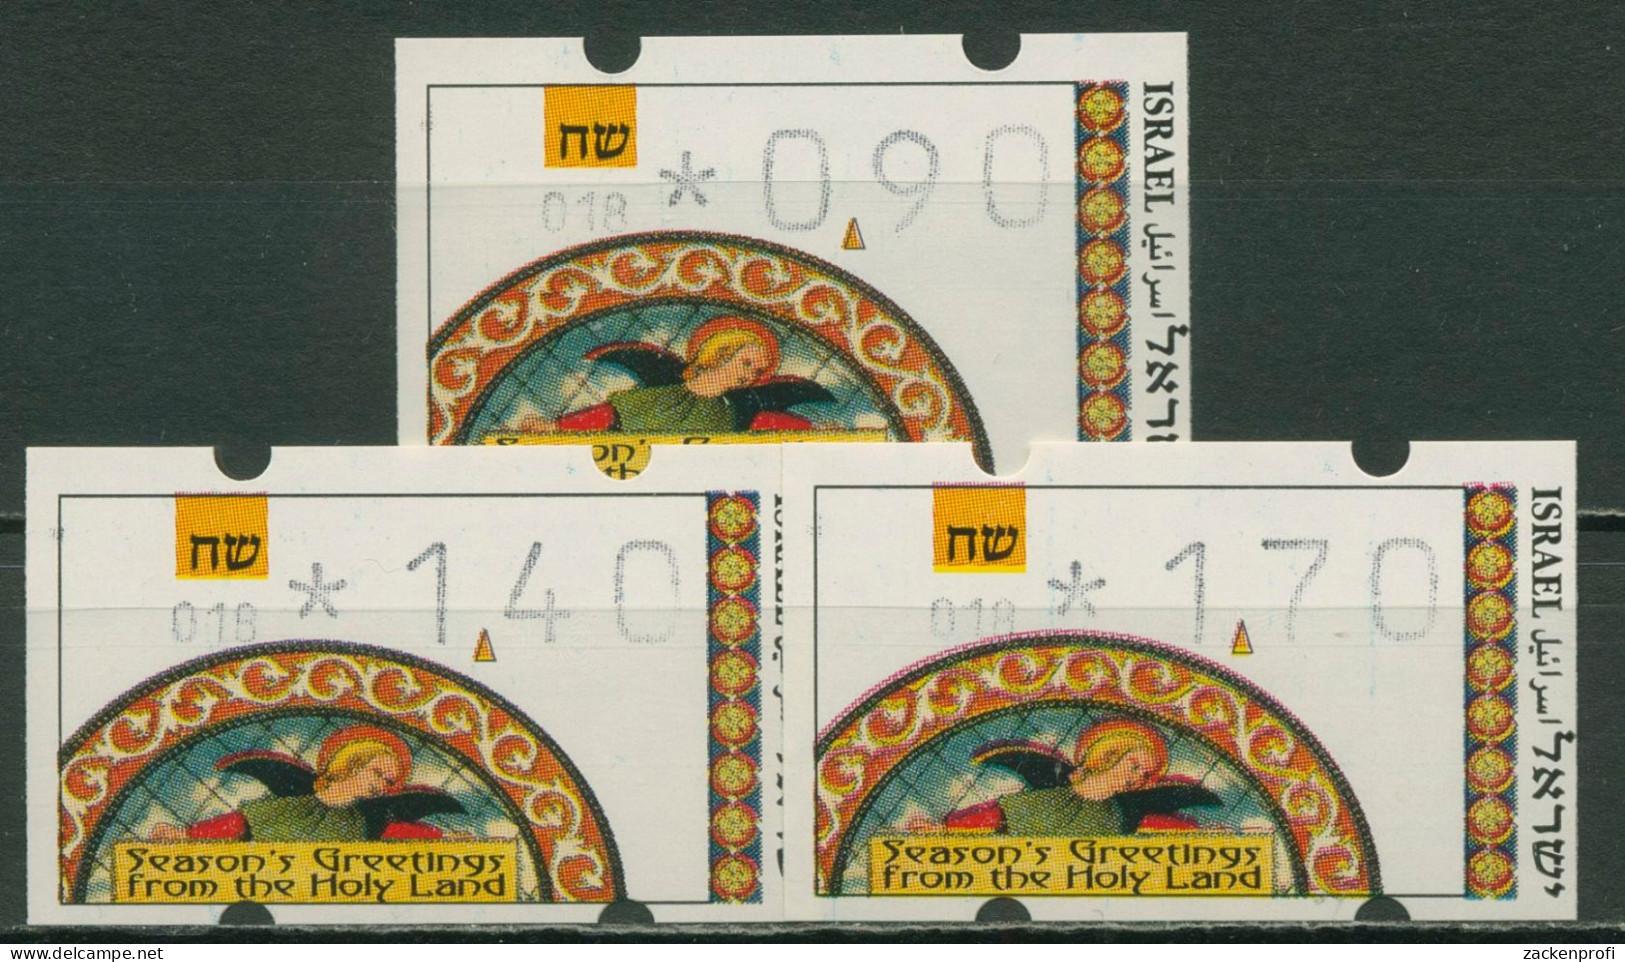 Israel ATM 1994 Weihnachten, Automat 018, Satz 3 Werte, ATM 24.1 S1 Postfrisch - Automatenmarken (Frama)